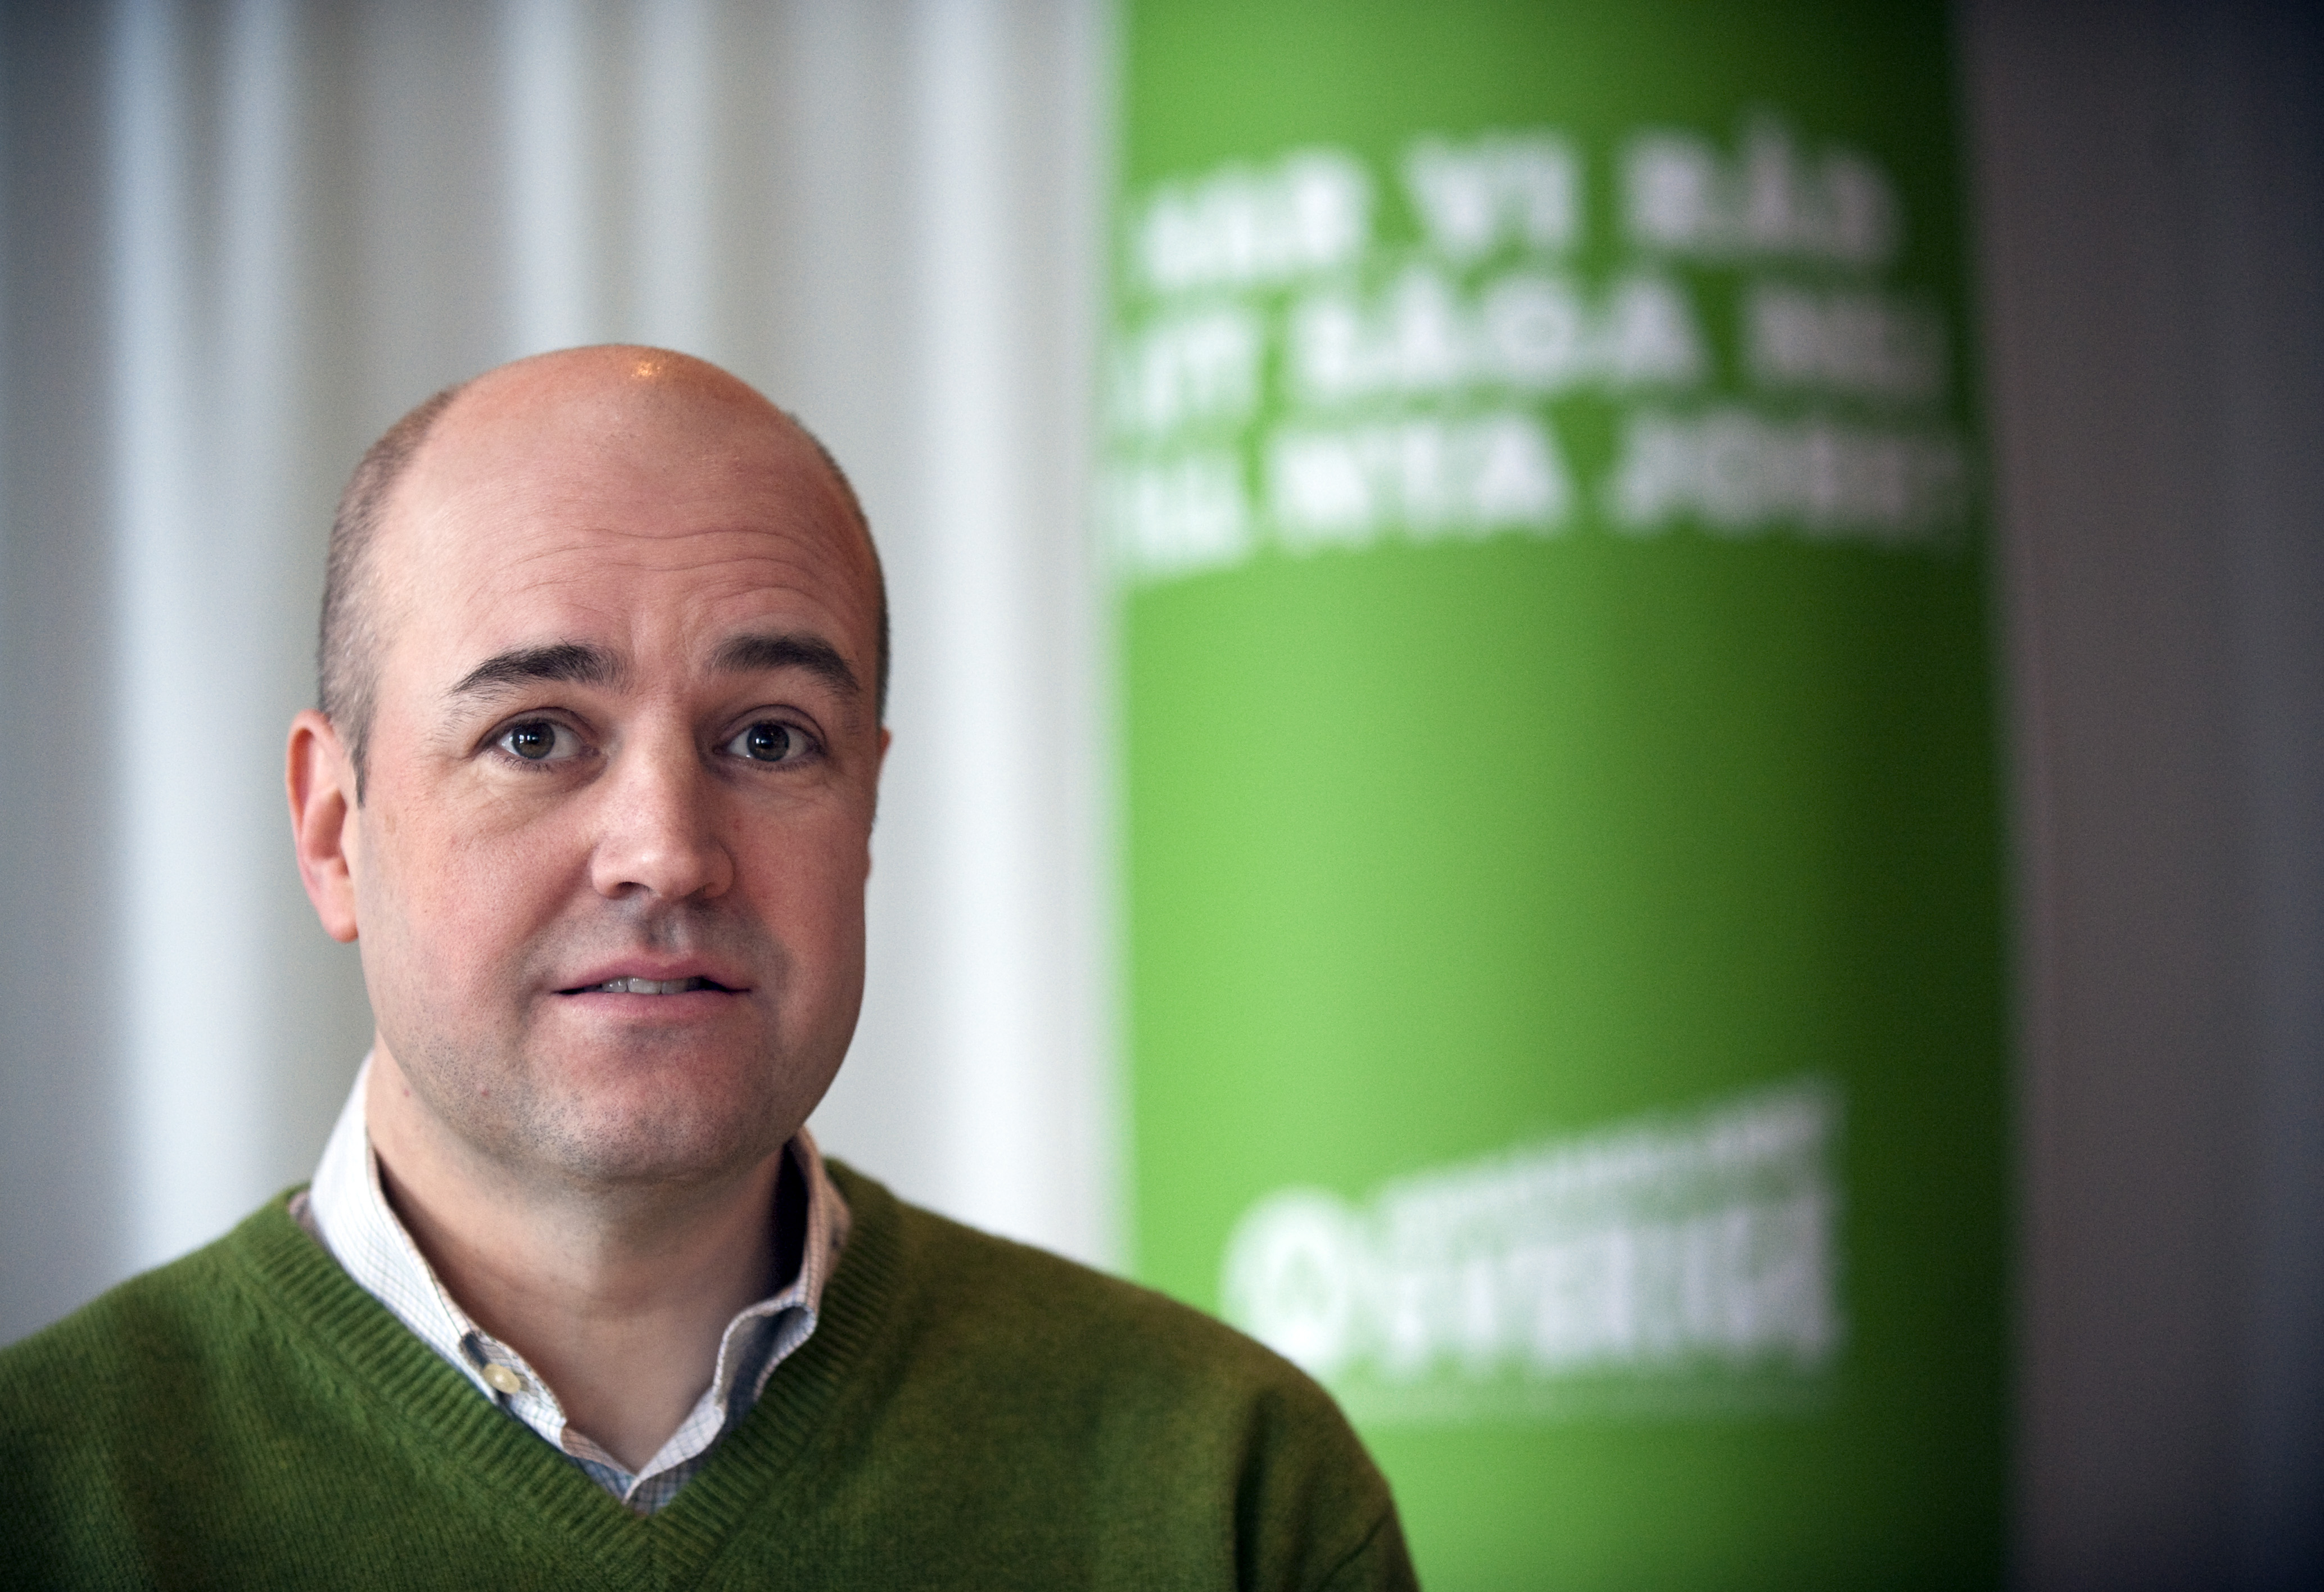 Alliansen, Rut-avdrag, Moderaterna, Regeringen, Hushållsnära tjänster, Riksdagsvalet 2010, Fredrik Reinfeldt